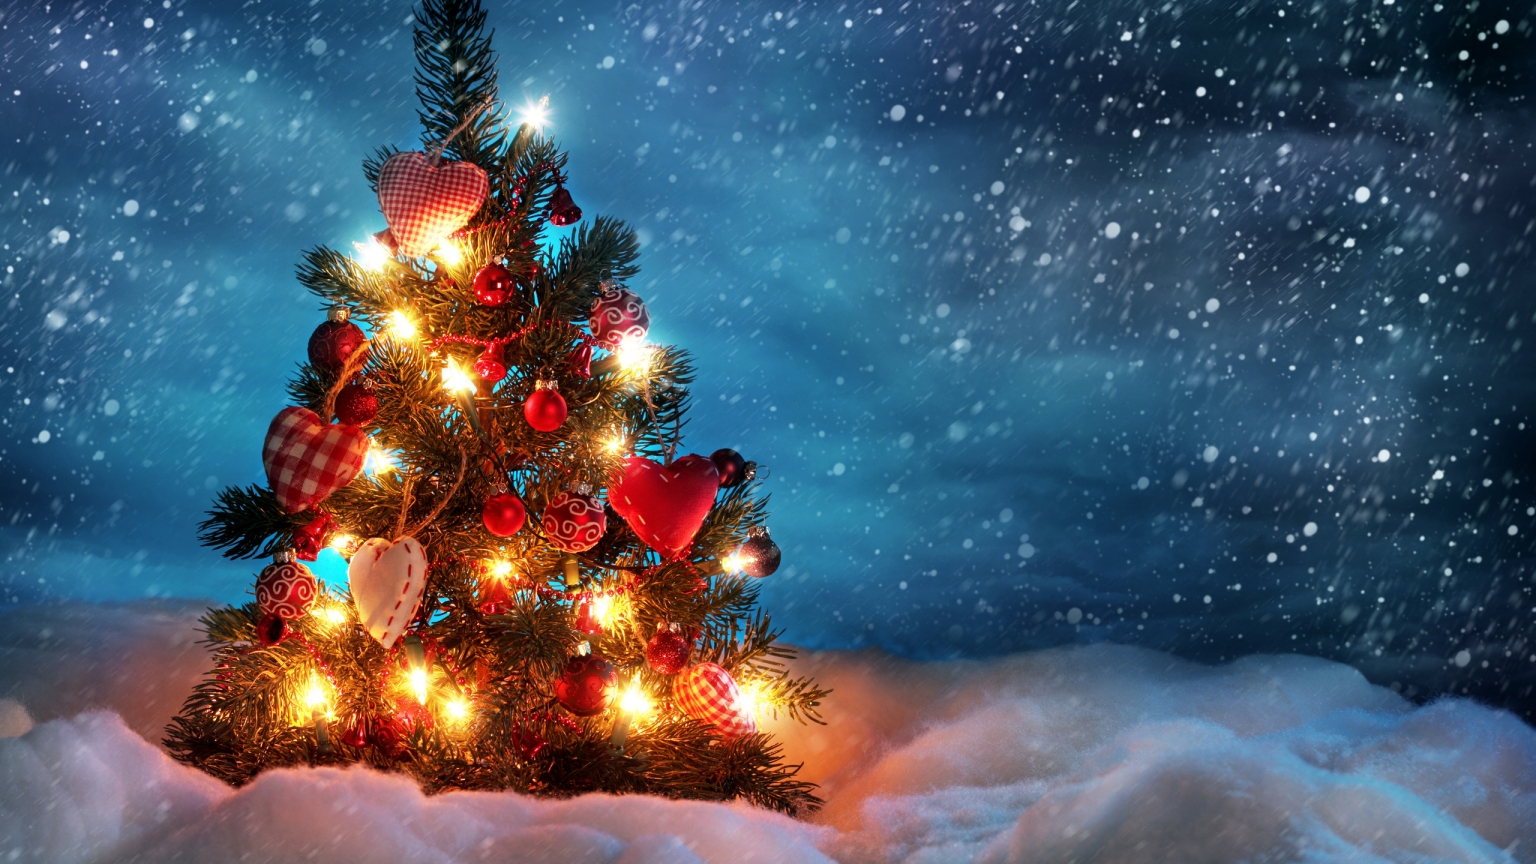 Lovely Christmas Tree for 1536 x 864 HDTV resolution